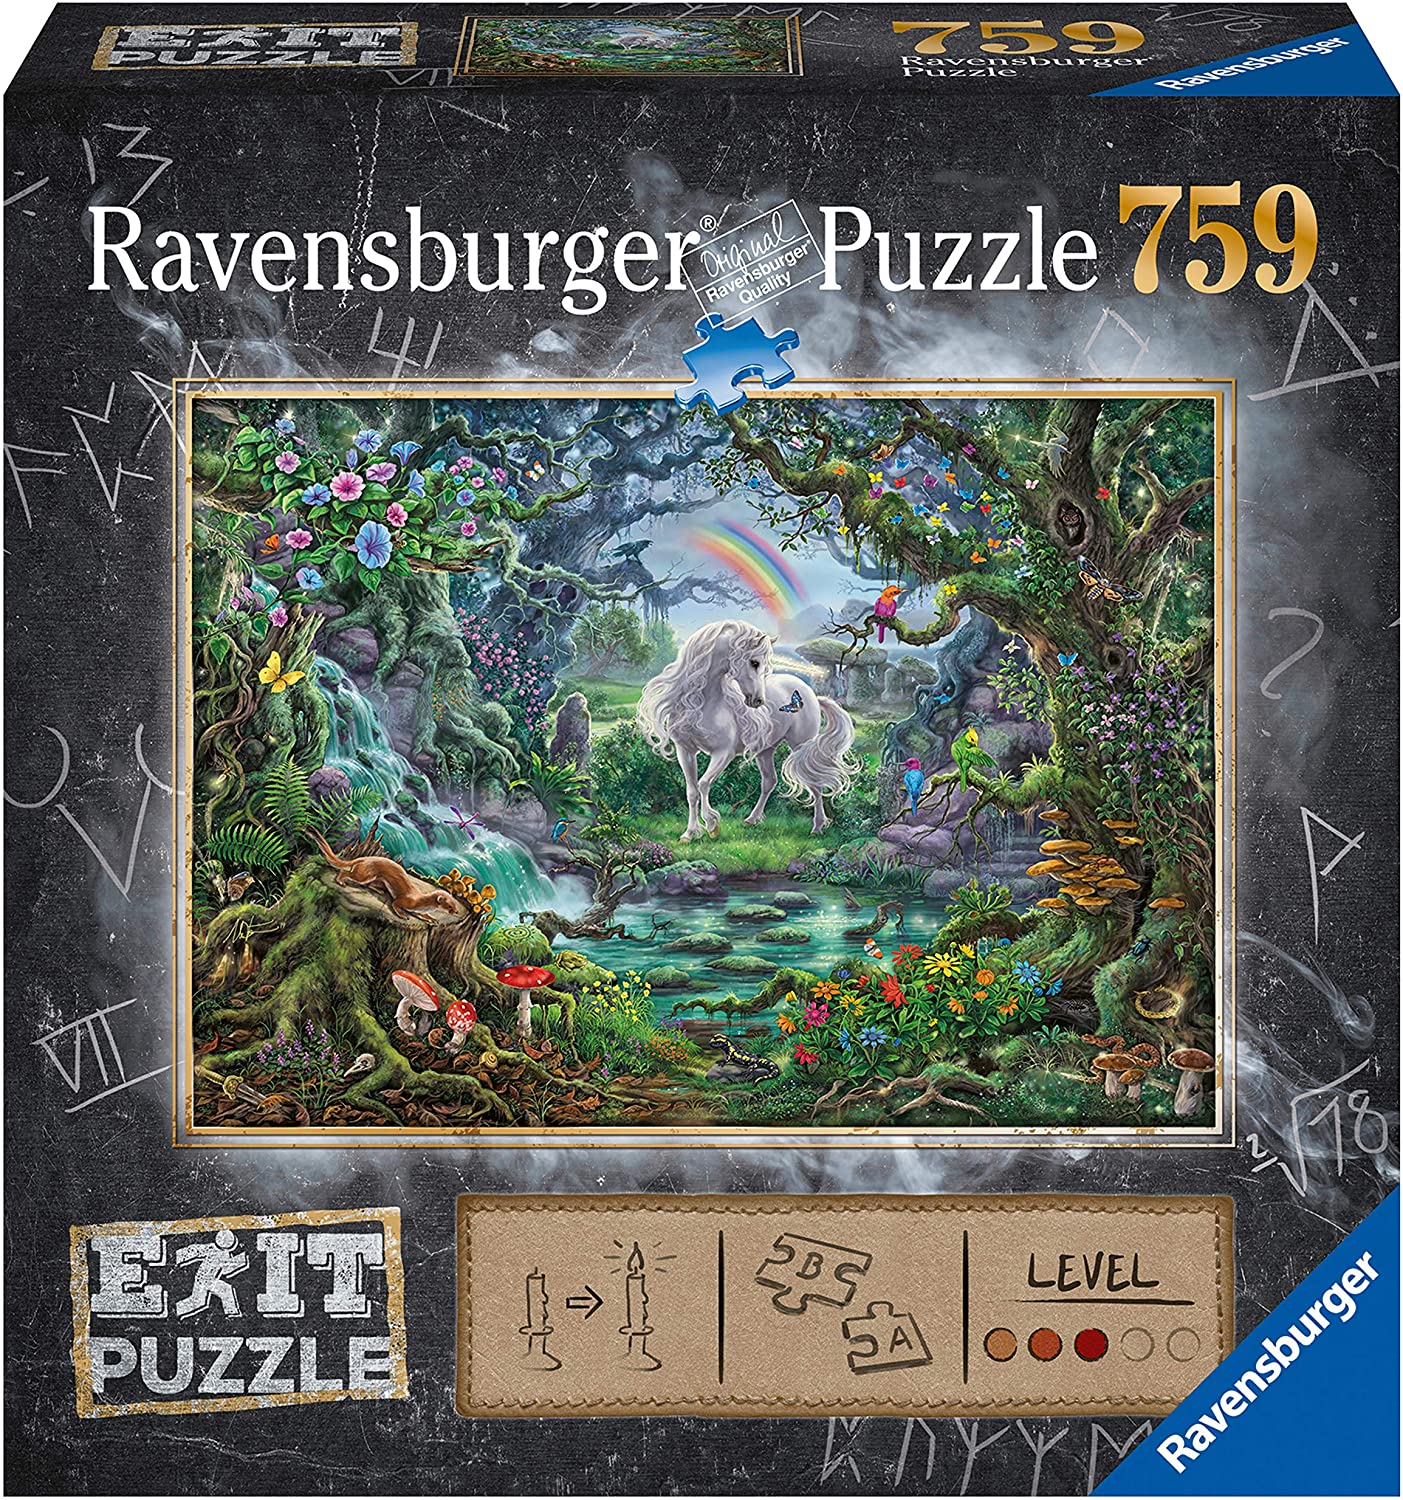 Ravensburger Escape Puzzle Unicorn #824915 759 Pieces. 